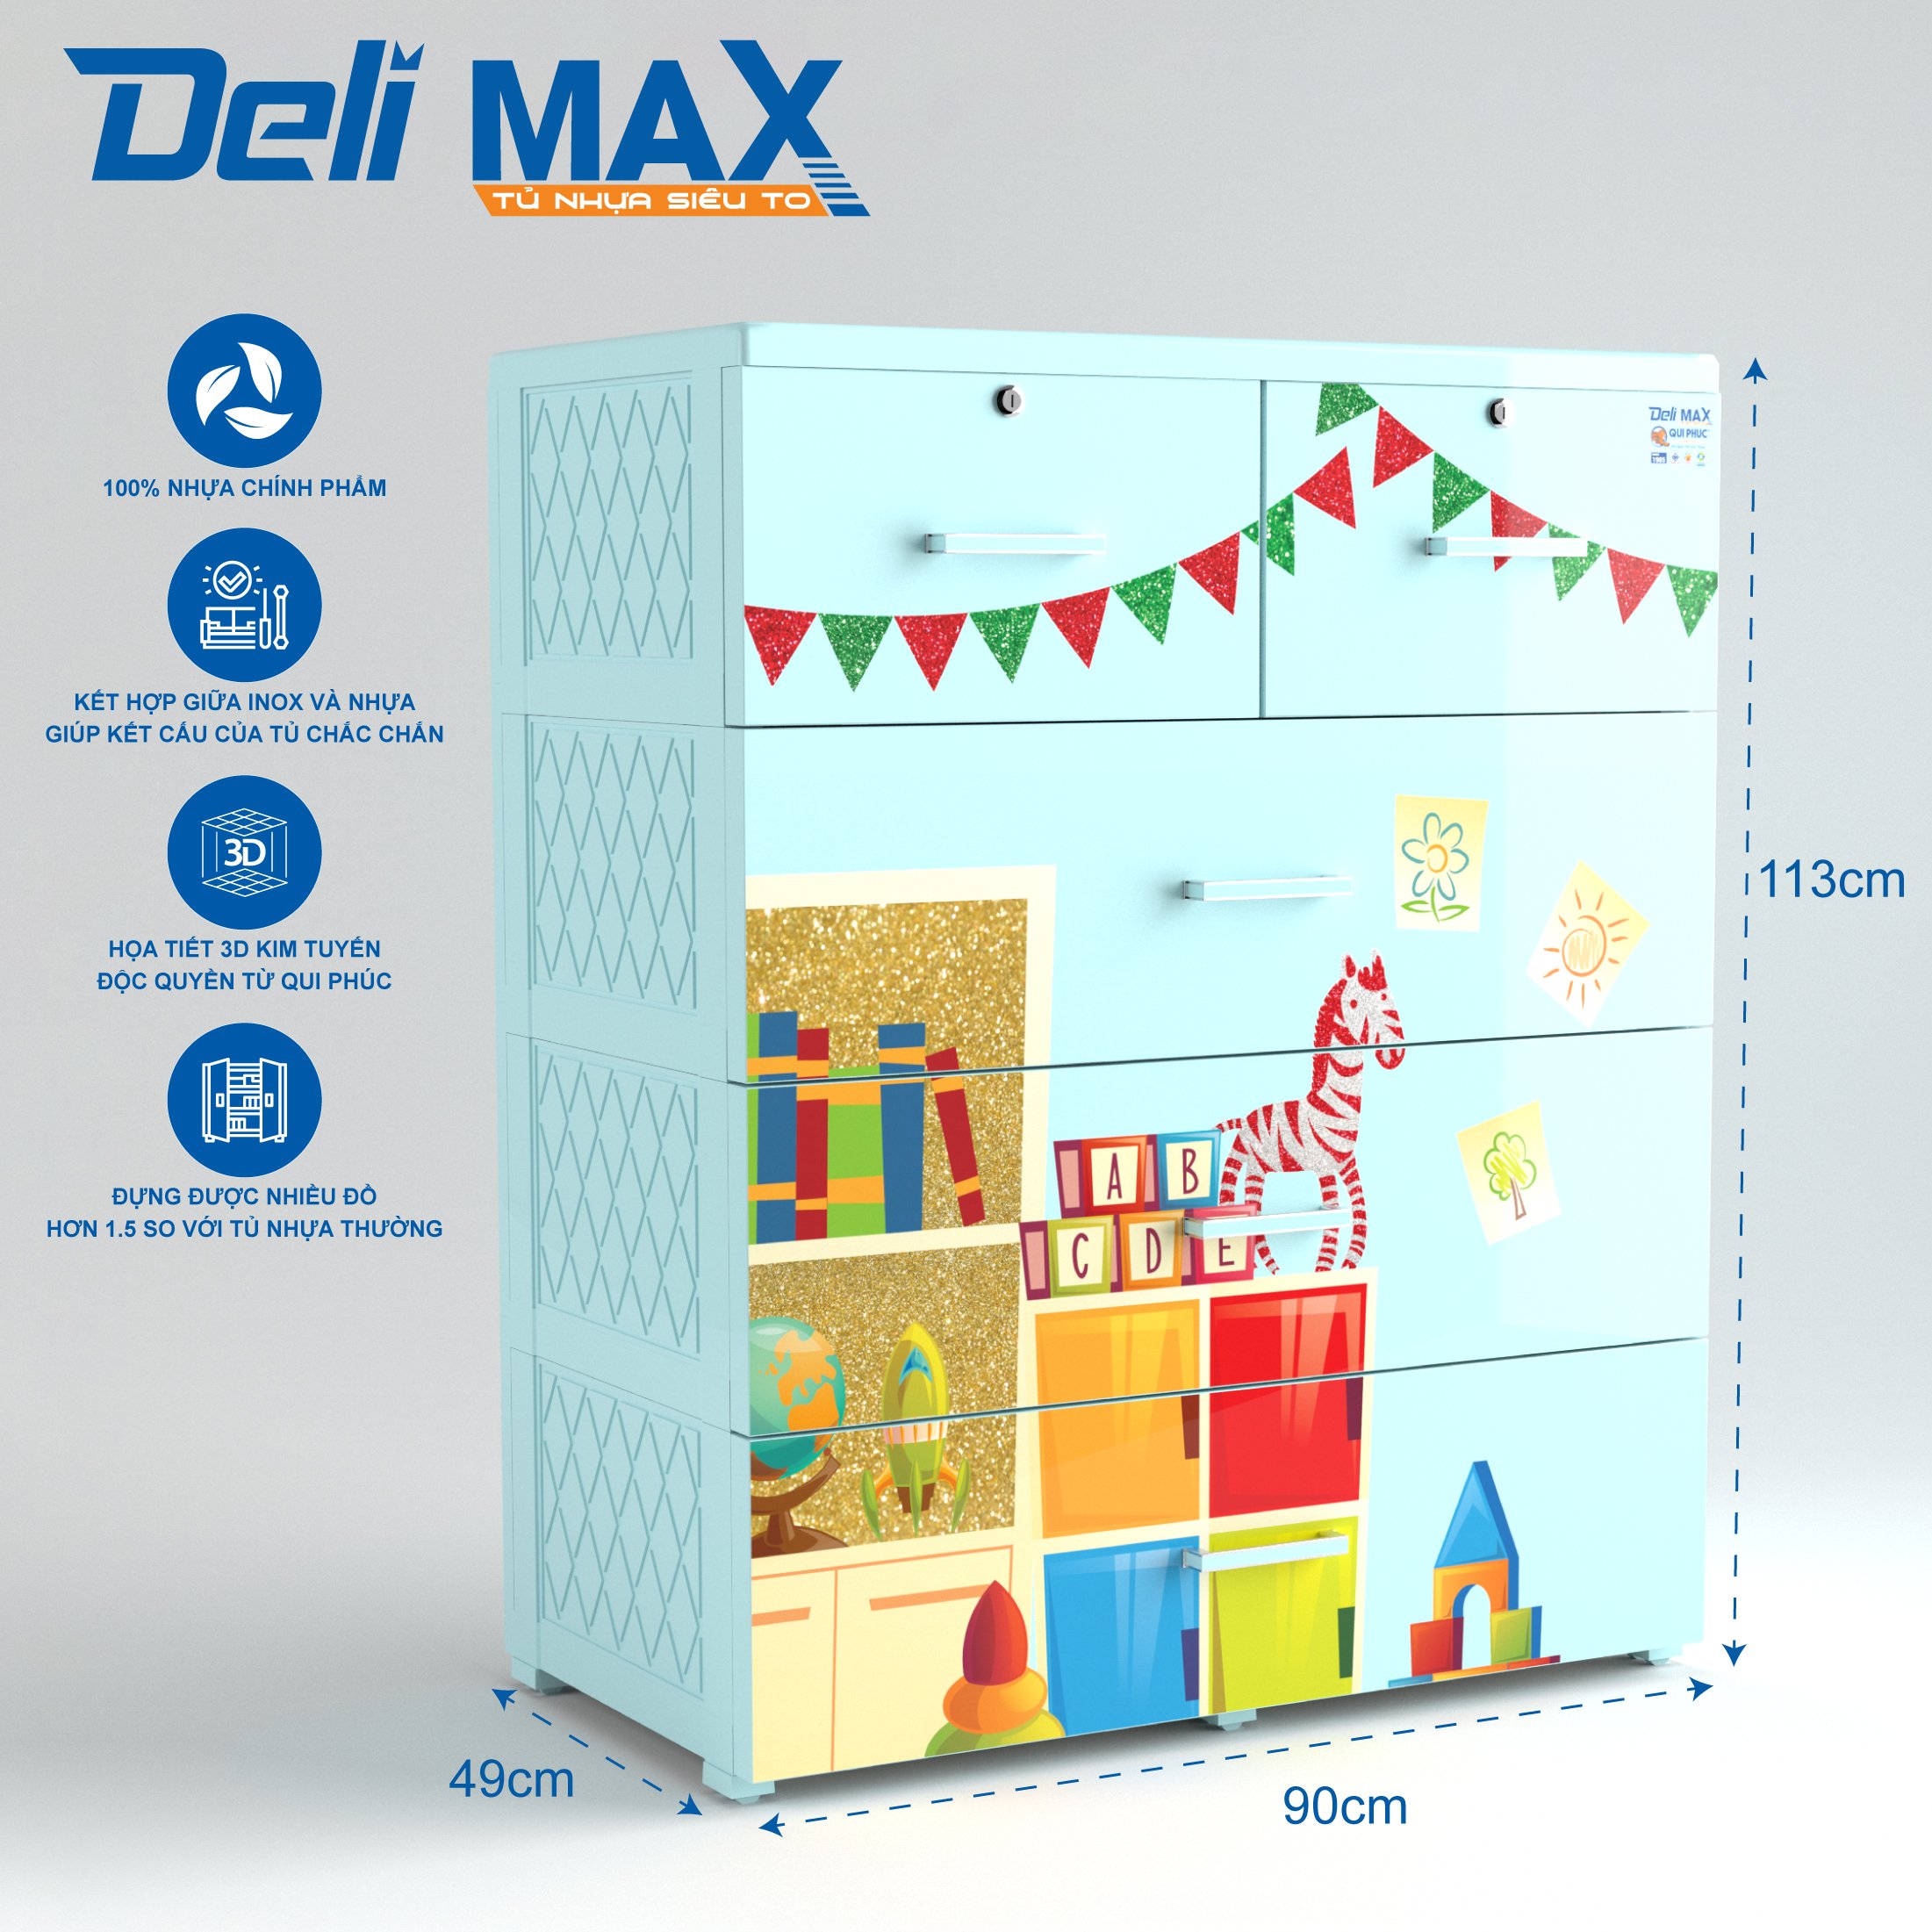 Tủ nhựa DELI MAX 4 tầng (QPN.176) - Siêu to siêu chắc, nhựa chính phẩm 100% an toàn cho người dùng